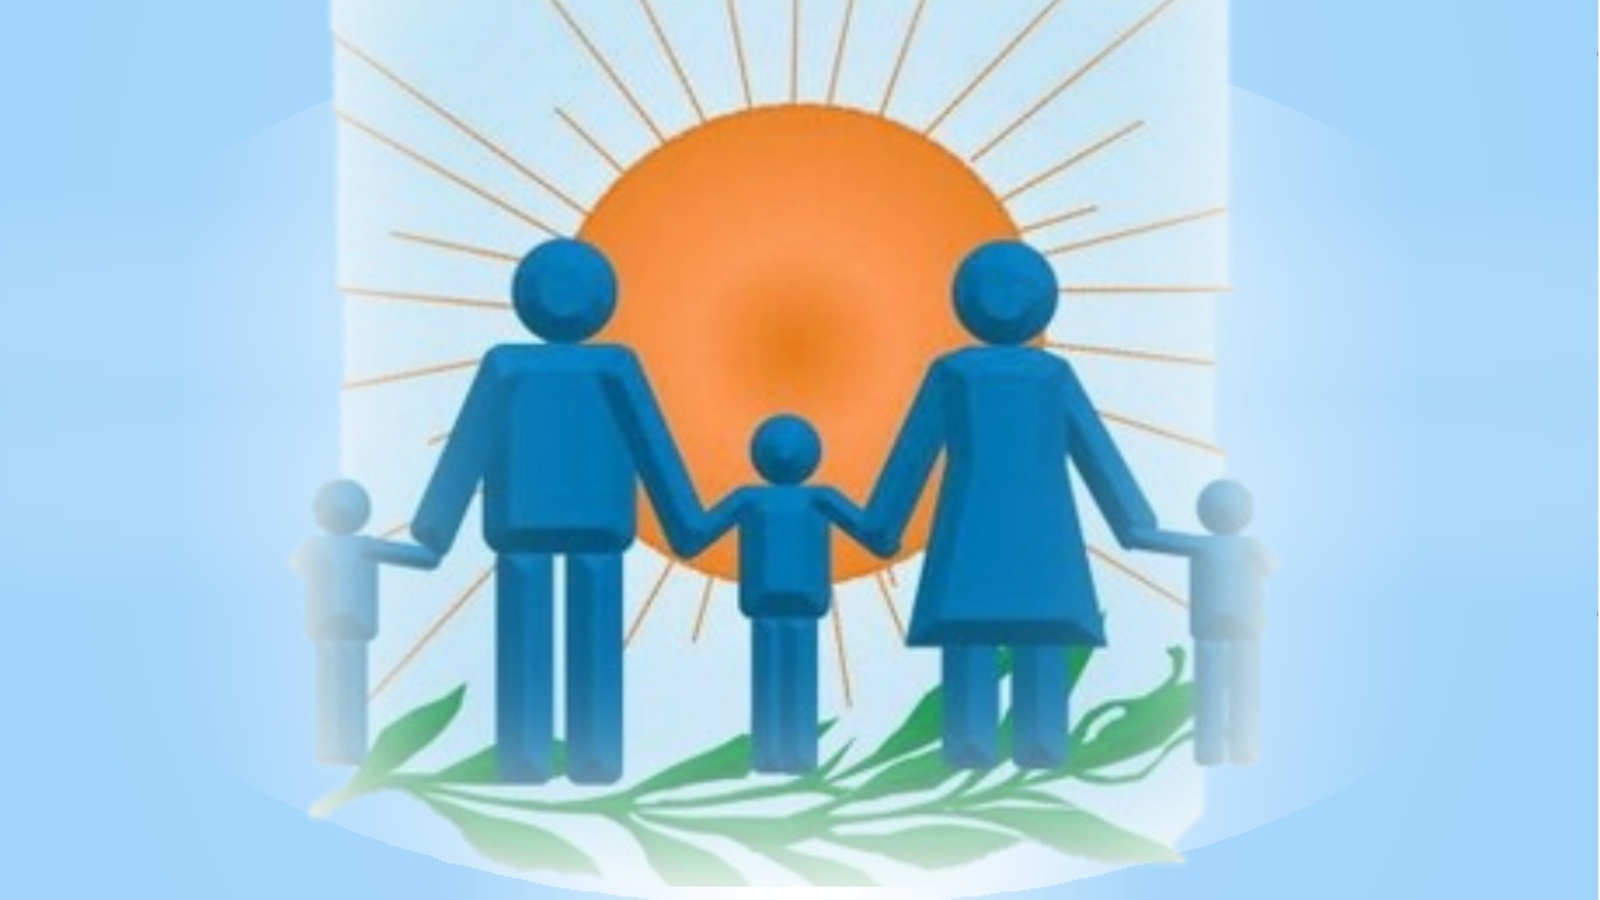 Социально правовая помощь семье. Эмблема семьи. Символ семьи. Правовое Просвещение родителей в детском саду. Сотрудничество семьи и школы.